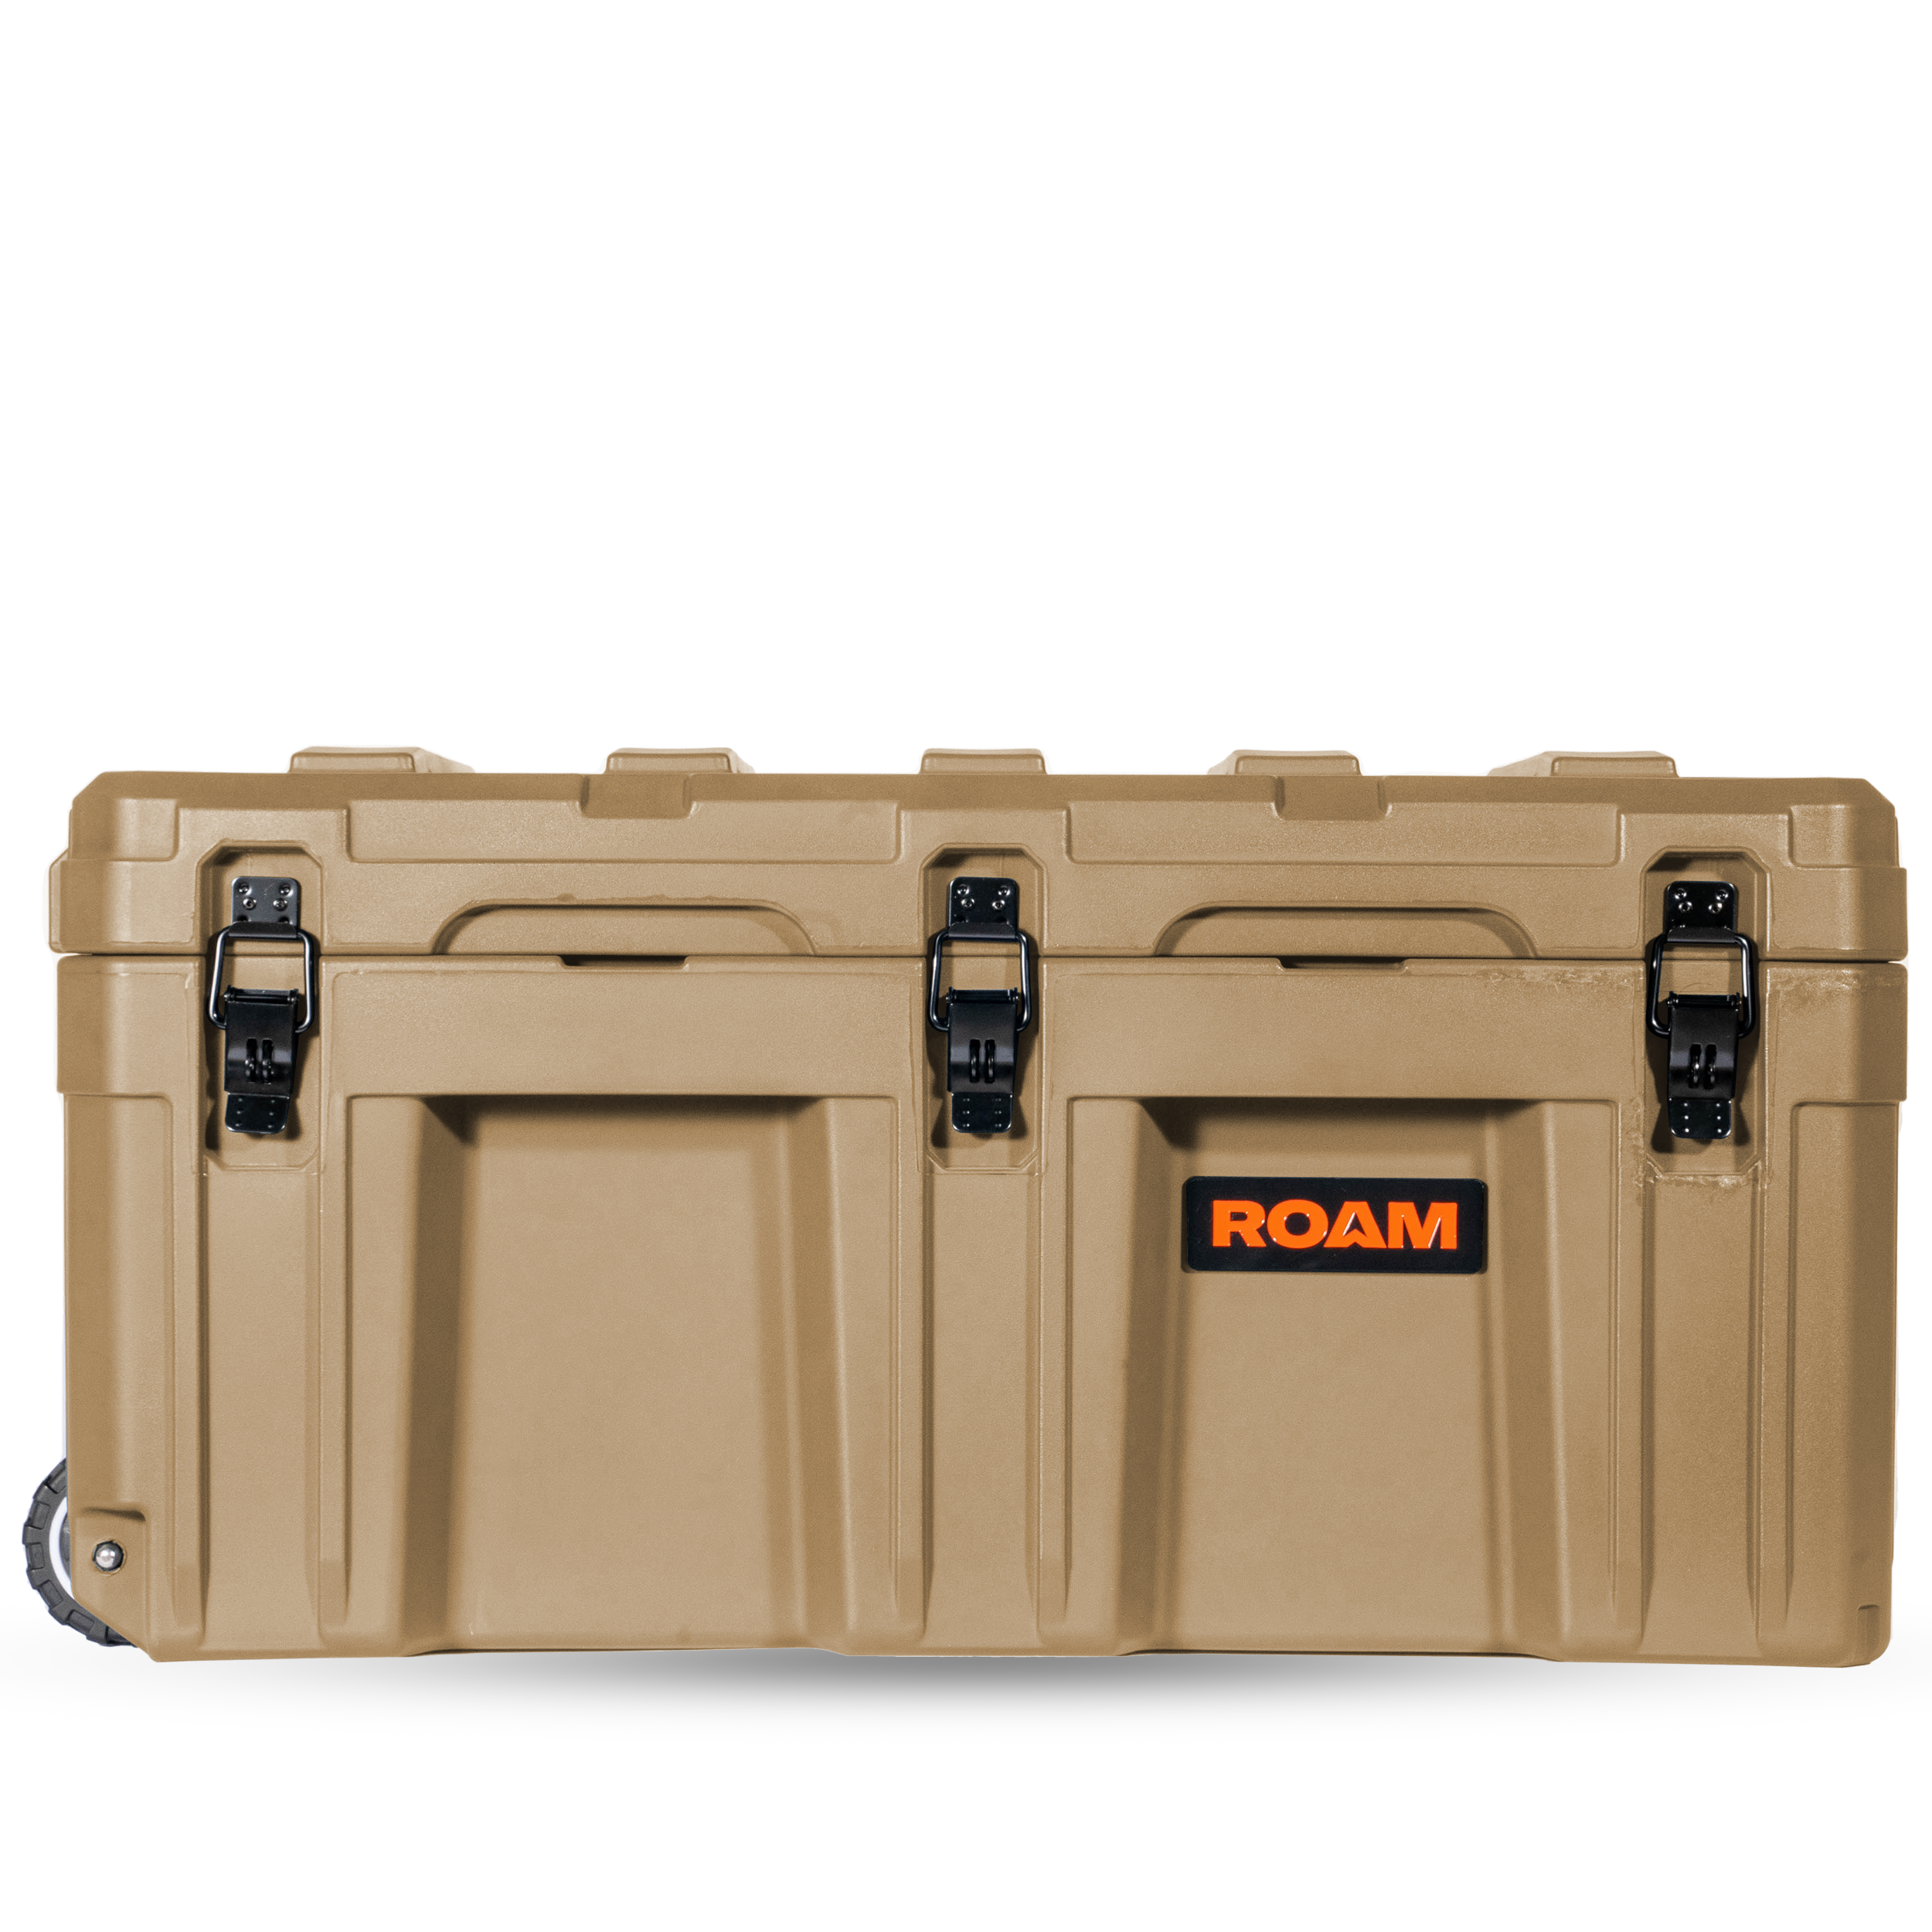 ROAM 150L Rolling Rugged Case